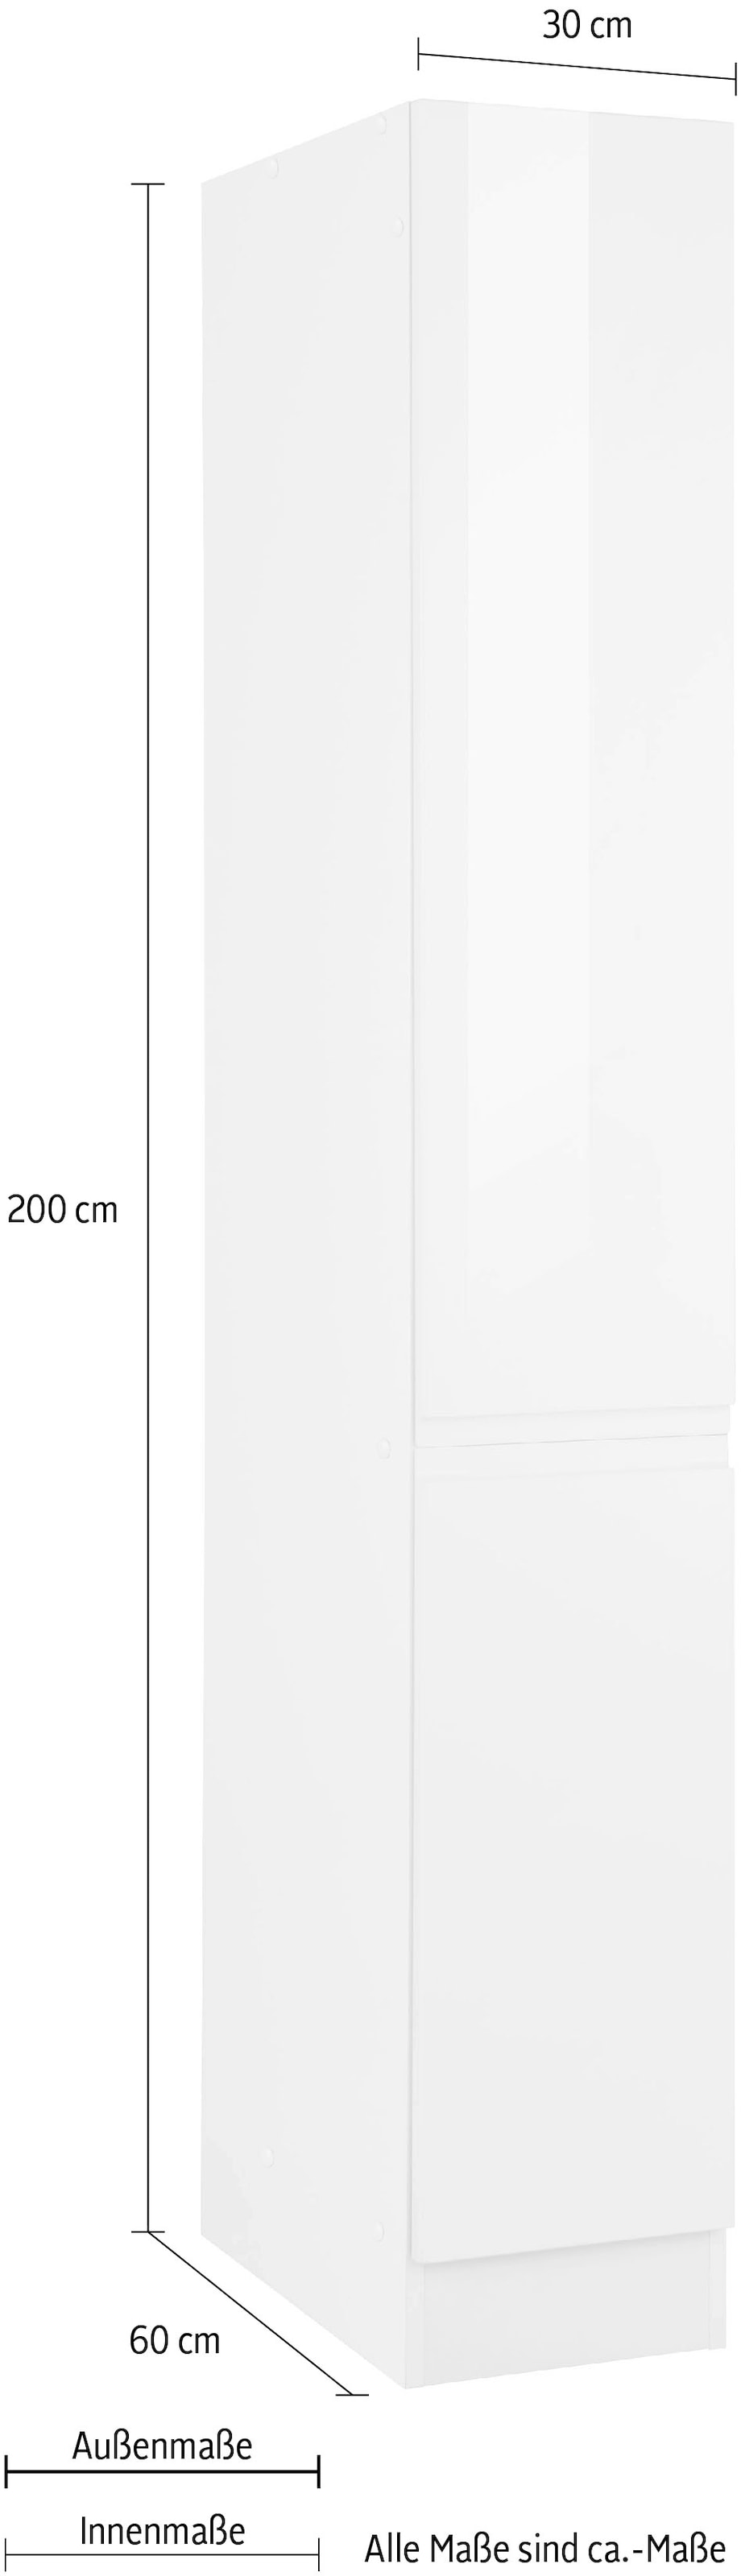 HELD MÖBEL Apothekerschrank »Virginia«, 200 cm hoch 30 cm breit, 2 Auszüge  mit 5 Ablagen, griffloses Design kaufen bei OTTO